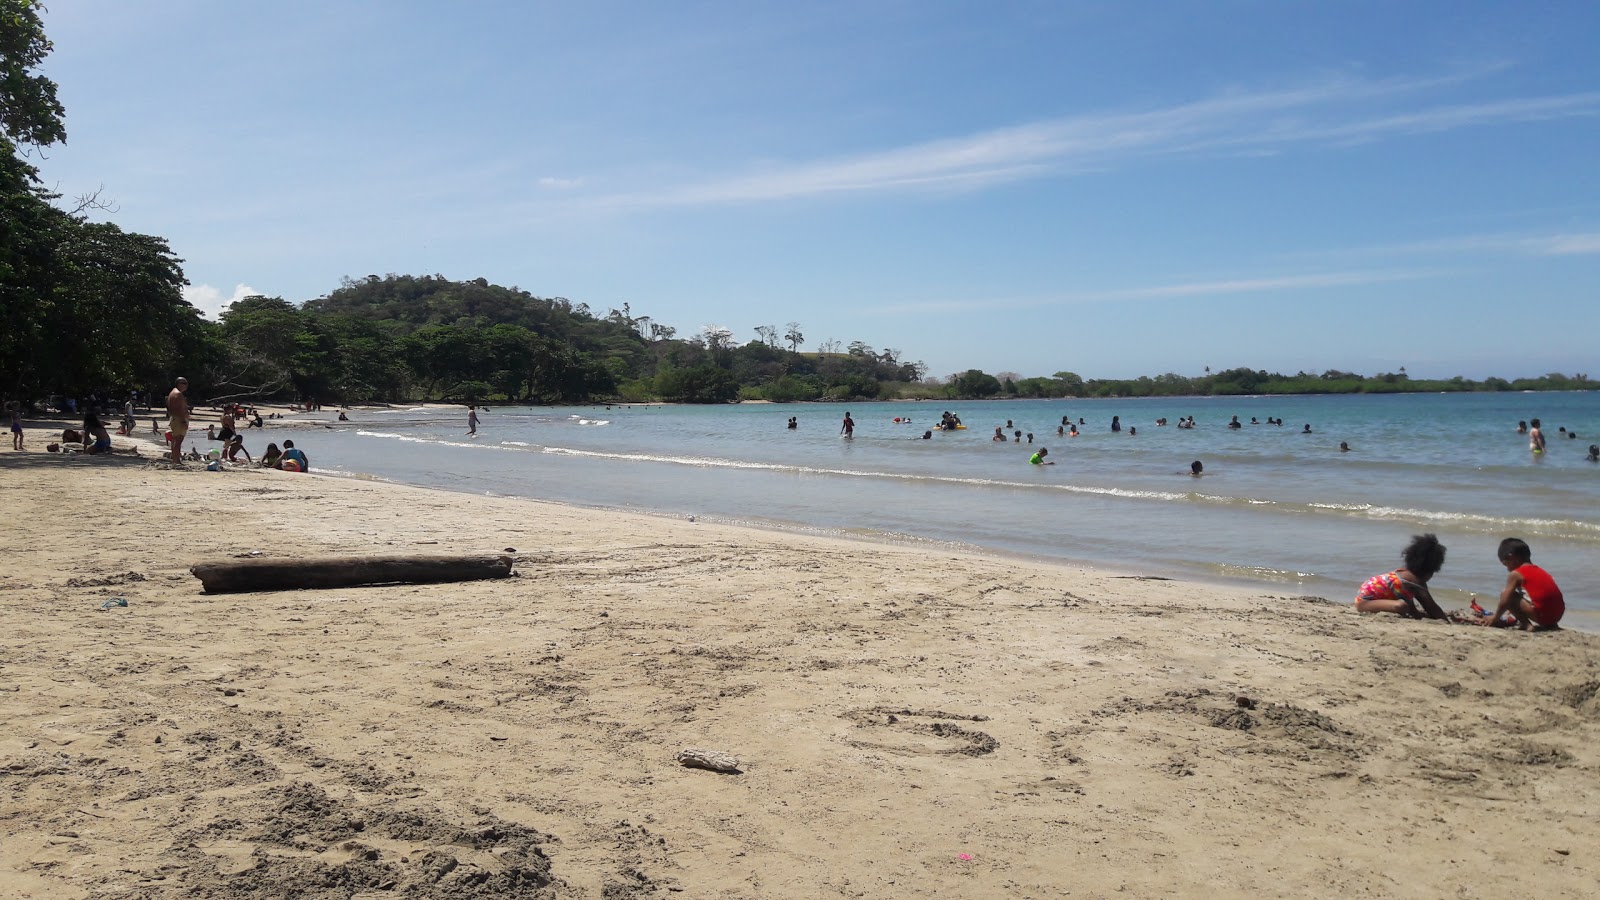 Fotografie cu Angosta Beach cu nivelul de curățenie înalt